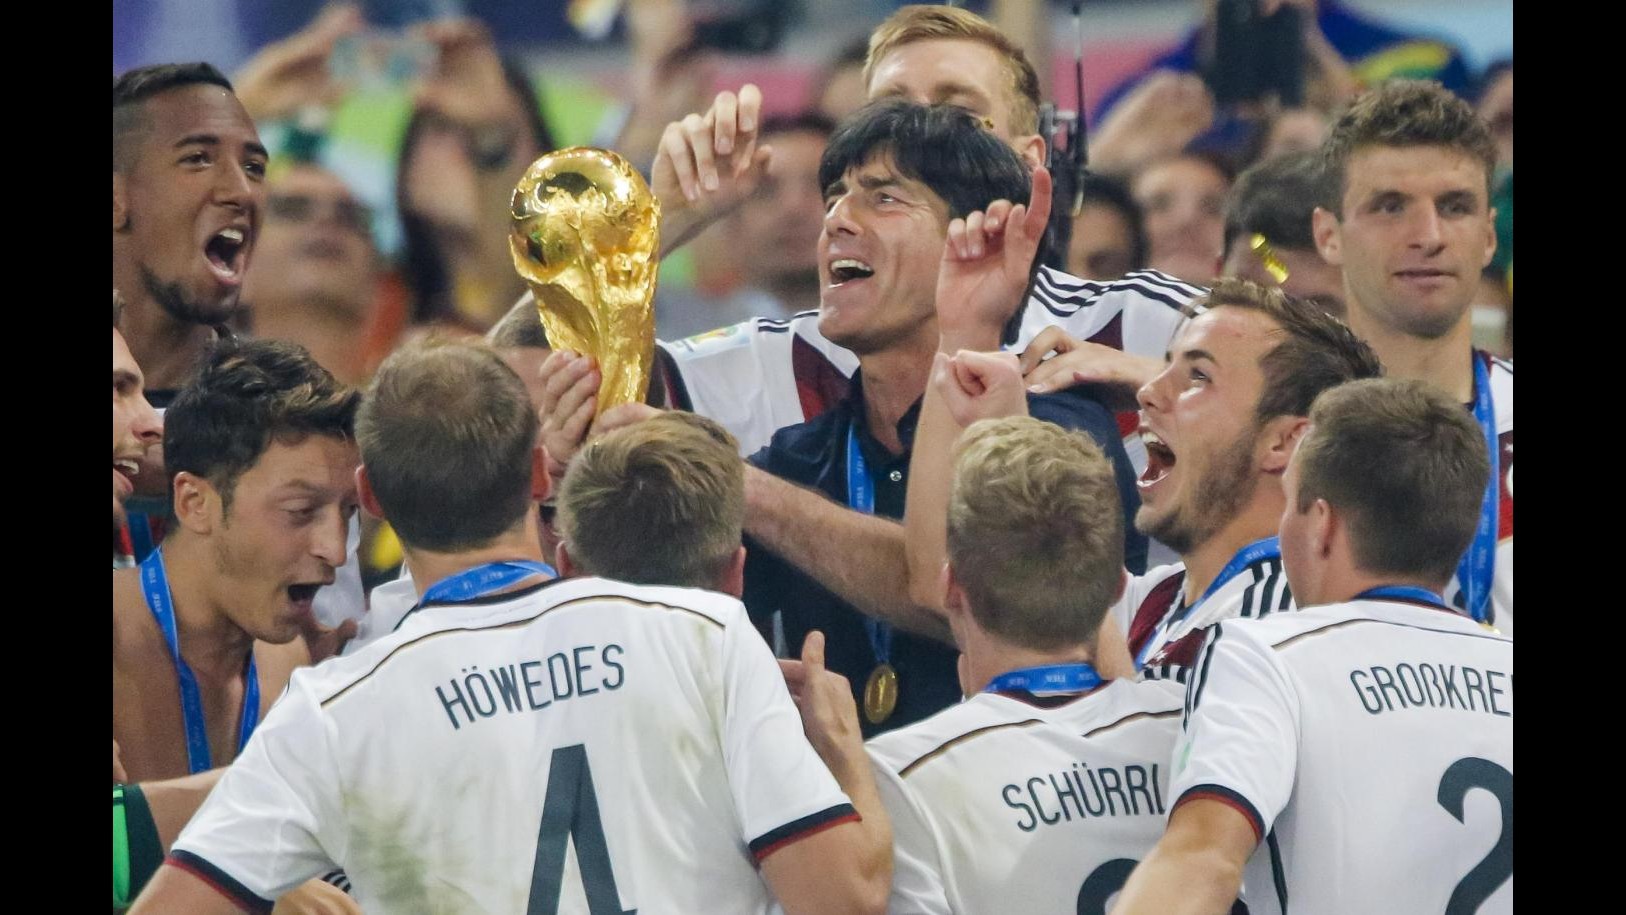 Mondiali 2014, stampa celebra Germania: trionfo galattico con Super Mario Gotze